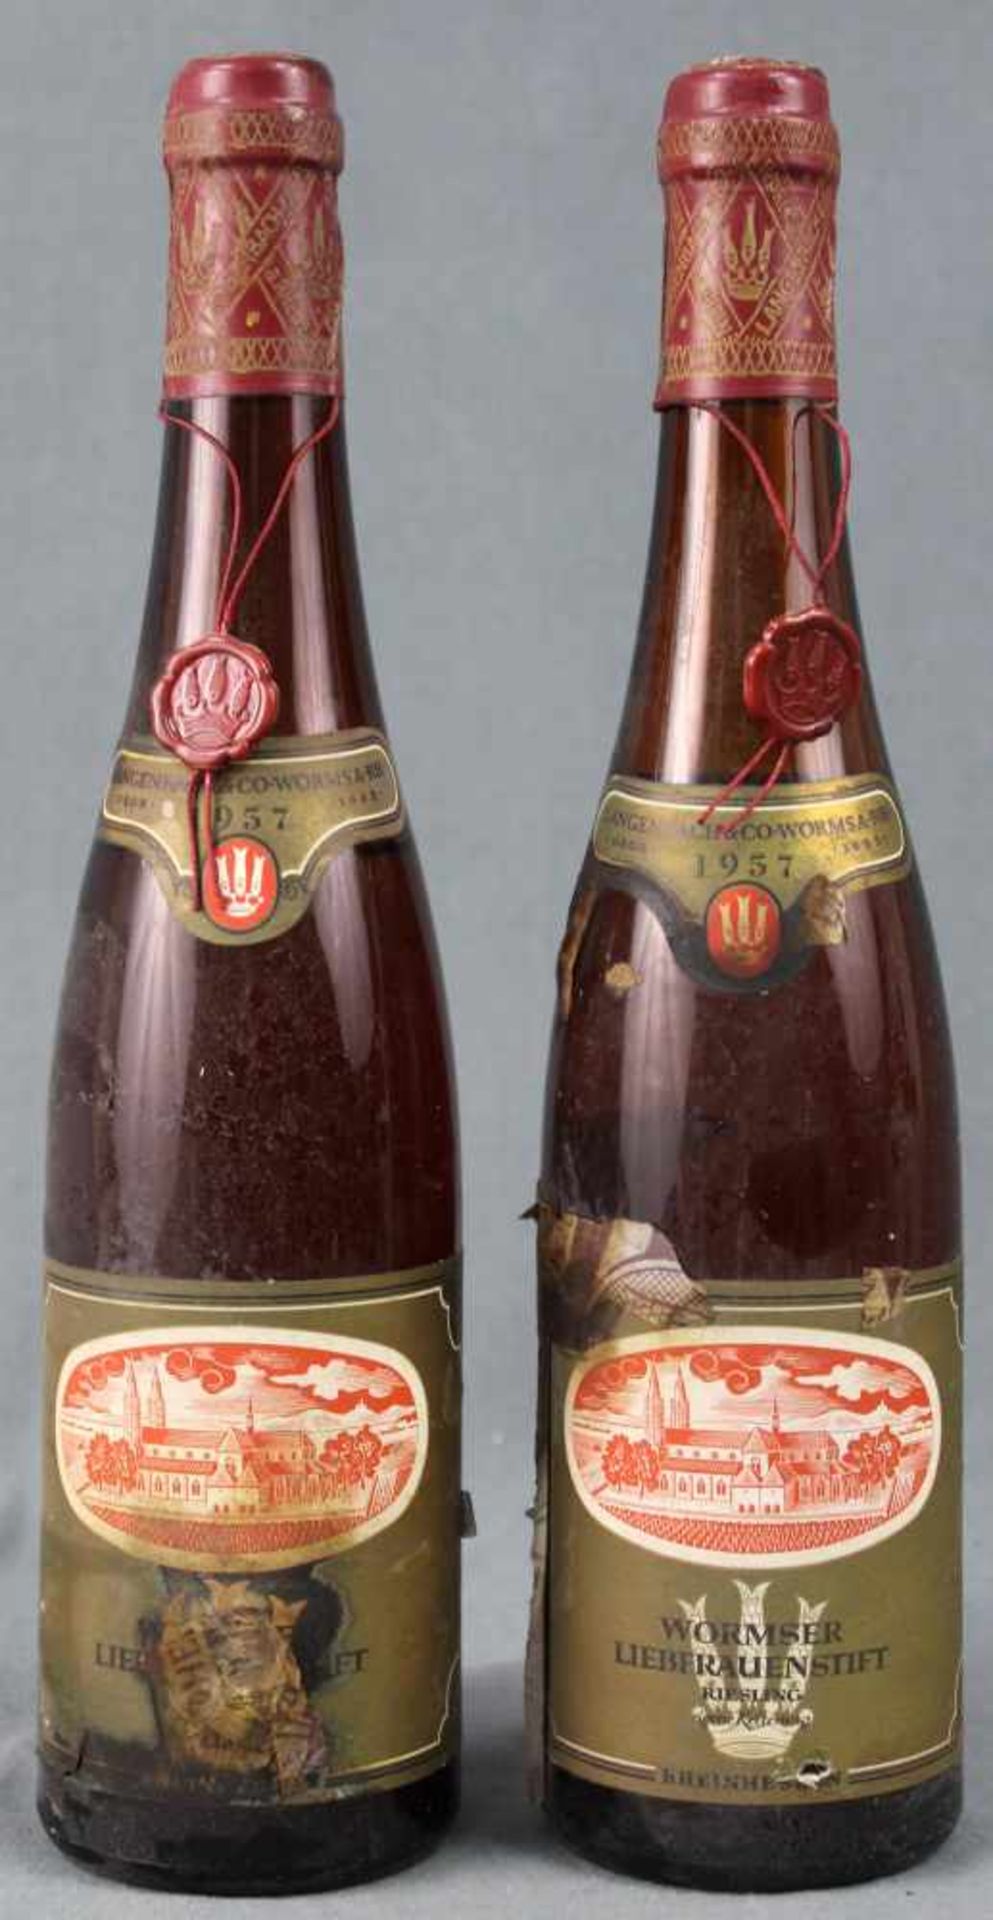 1957 Wormser Liebfrauenstift. Riesling. 2 ganze Flaschen.Weingut Langenbach & Co. Worms am Rhein,